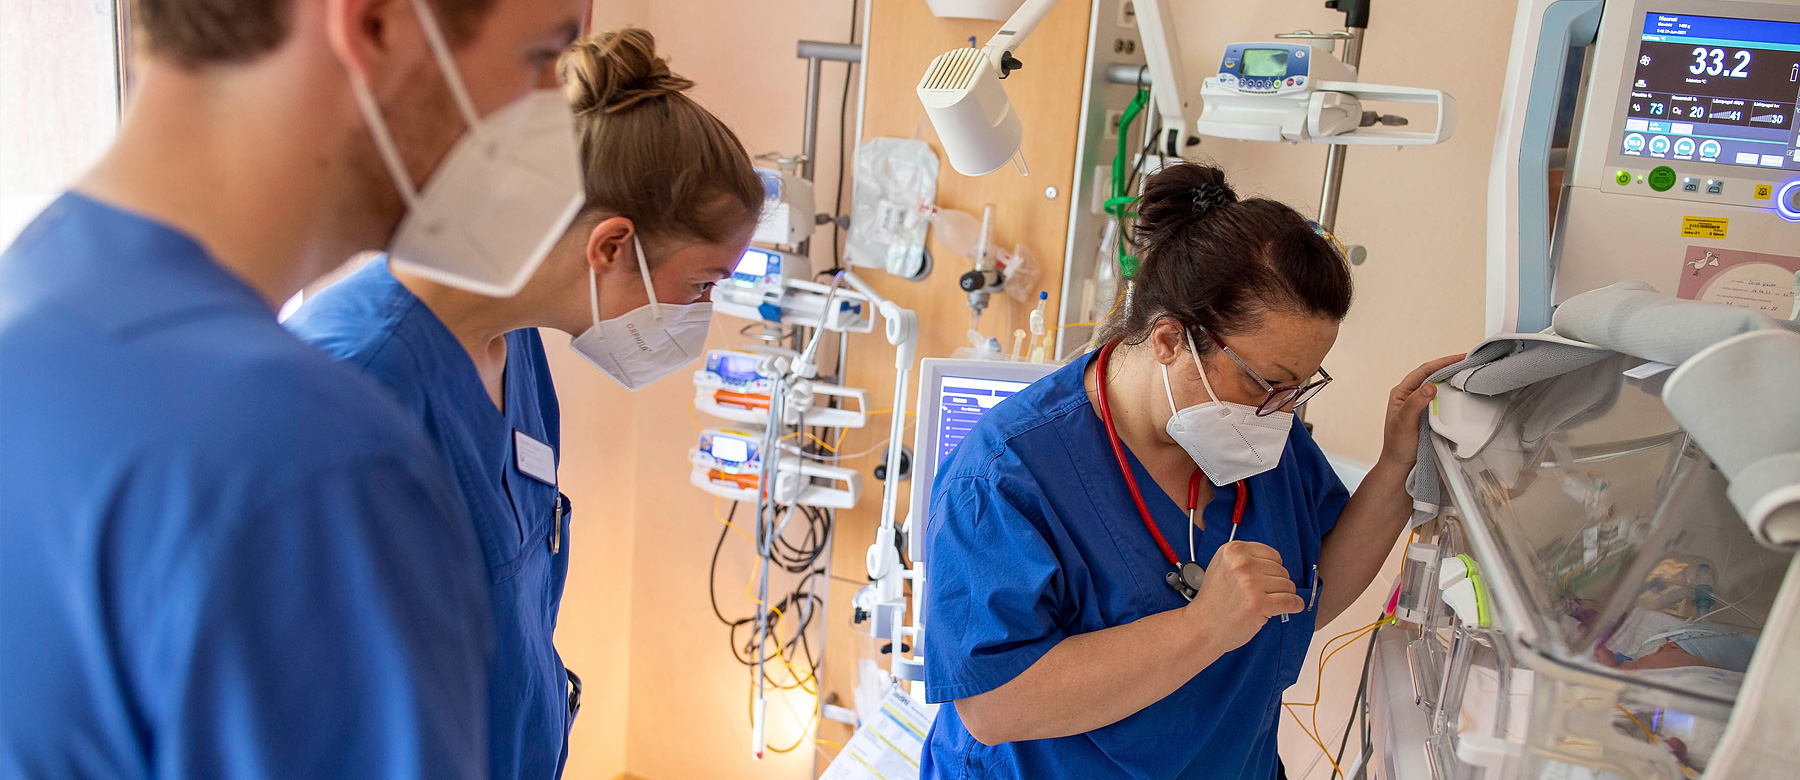 Kinderintensivpflegerin schaut nach einem Frühgeborenen im Inkubator und wird von zwei Krankenpflegeschülern begleitet.